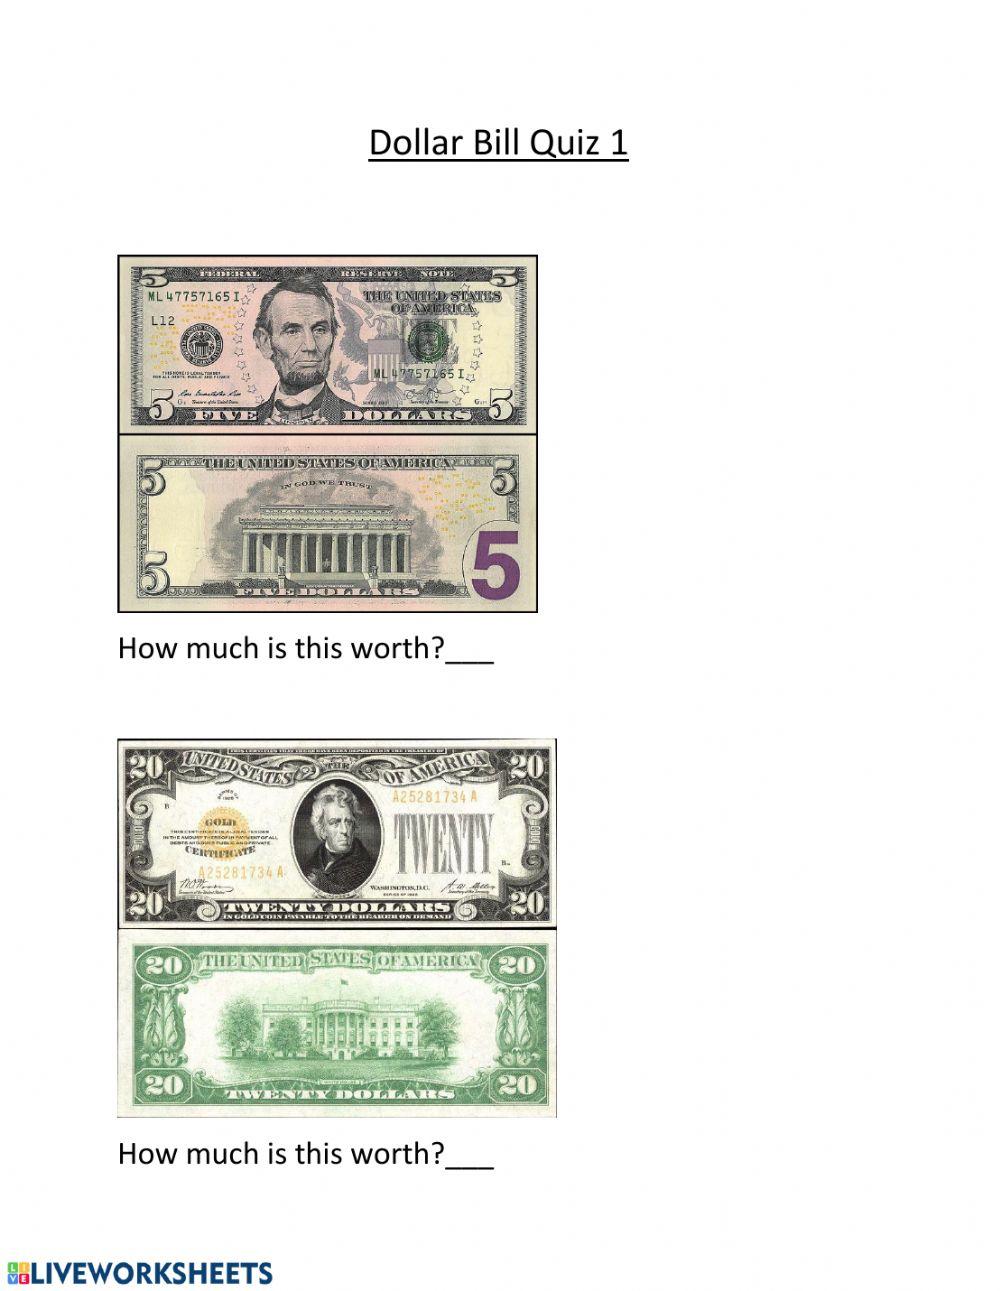 Dollar Bill Quiz 2